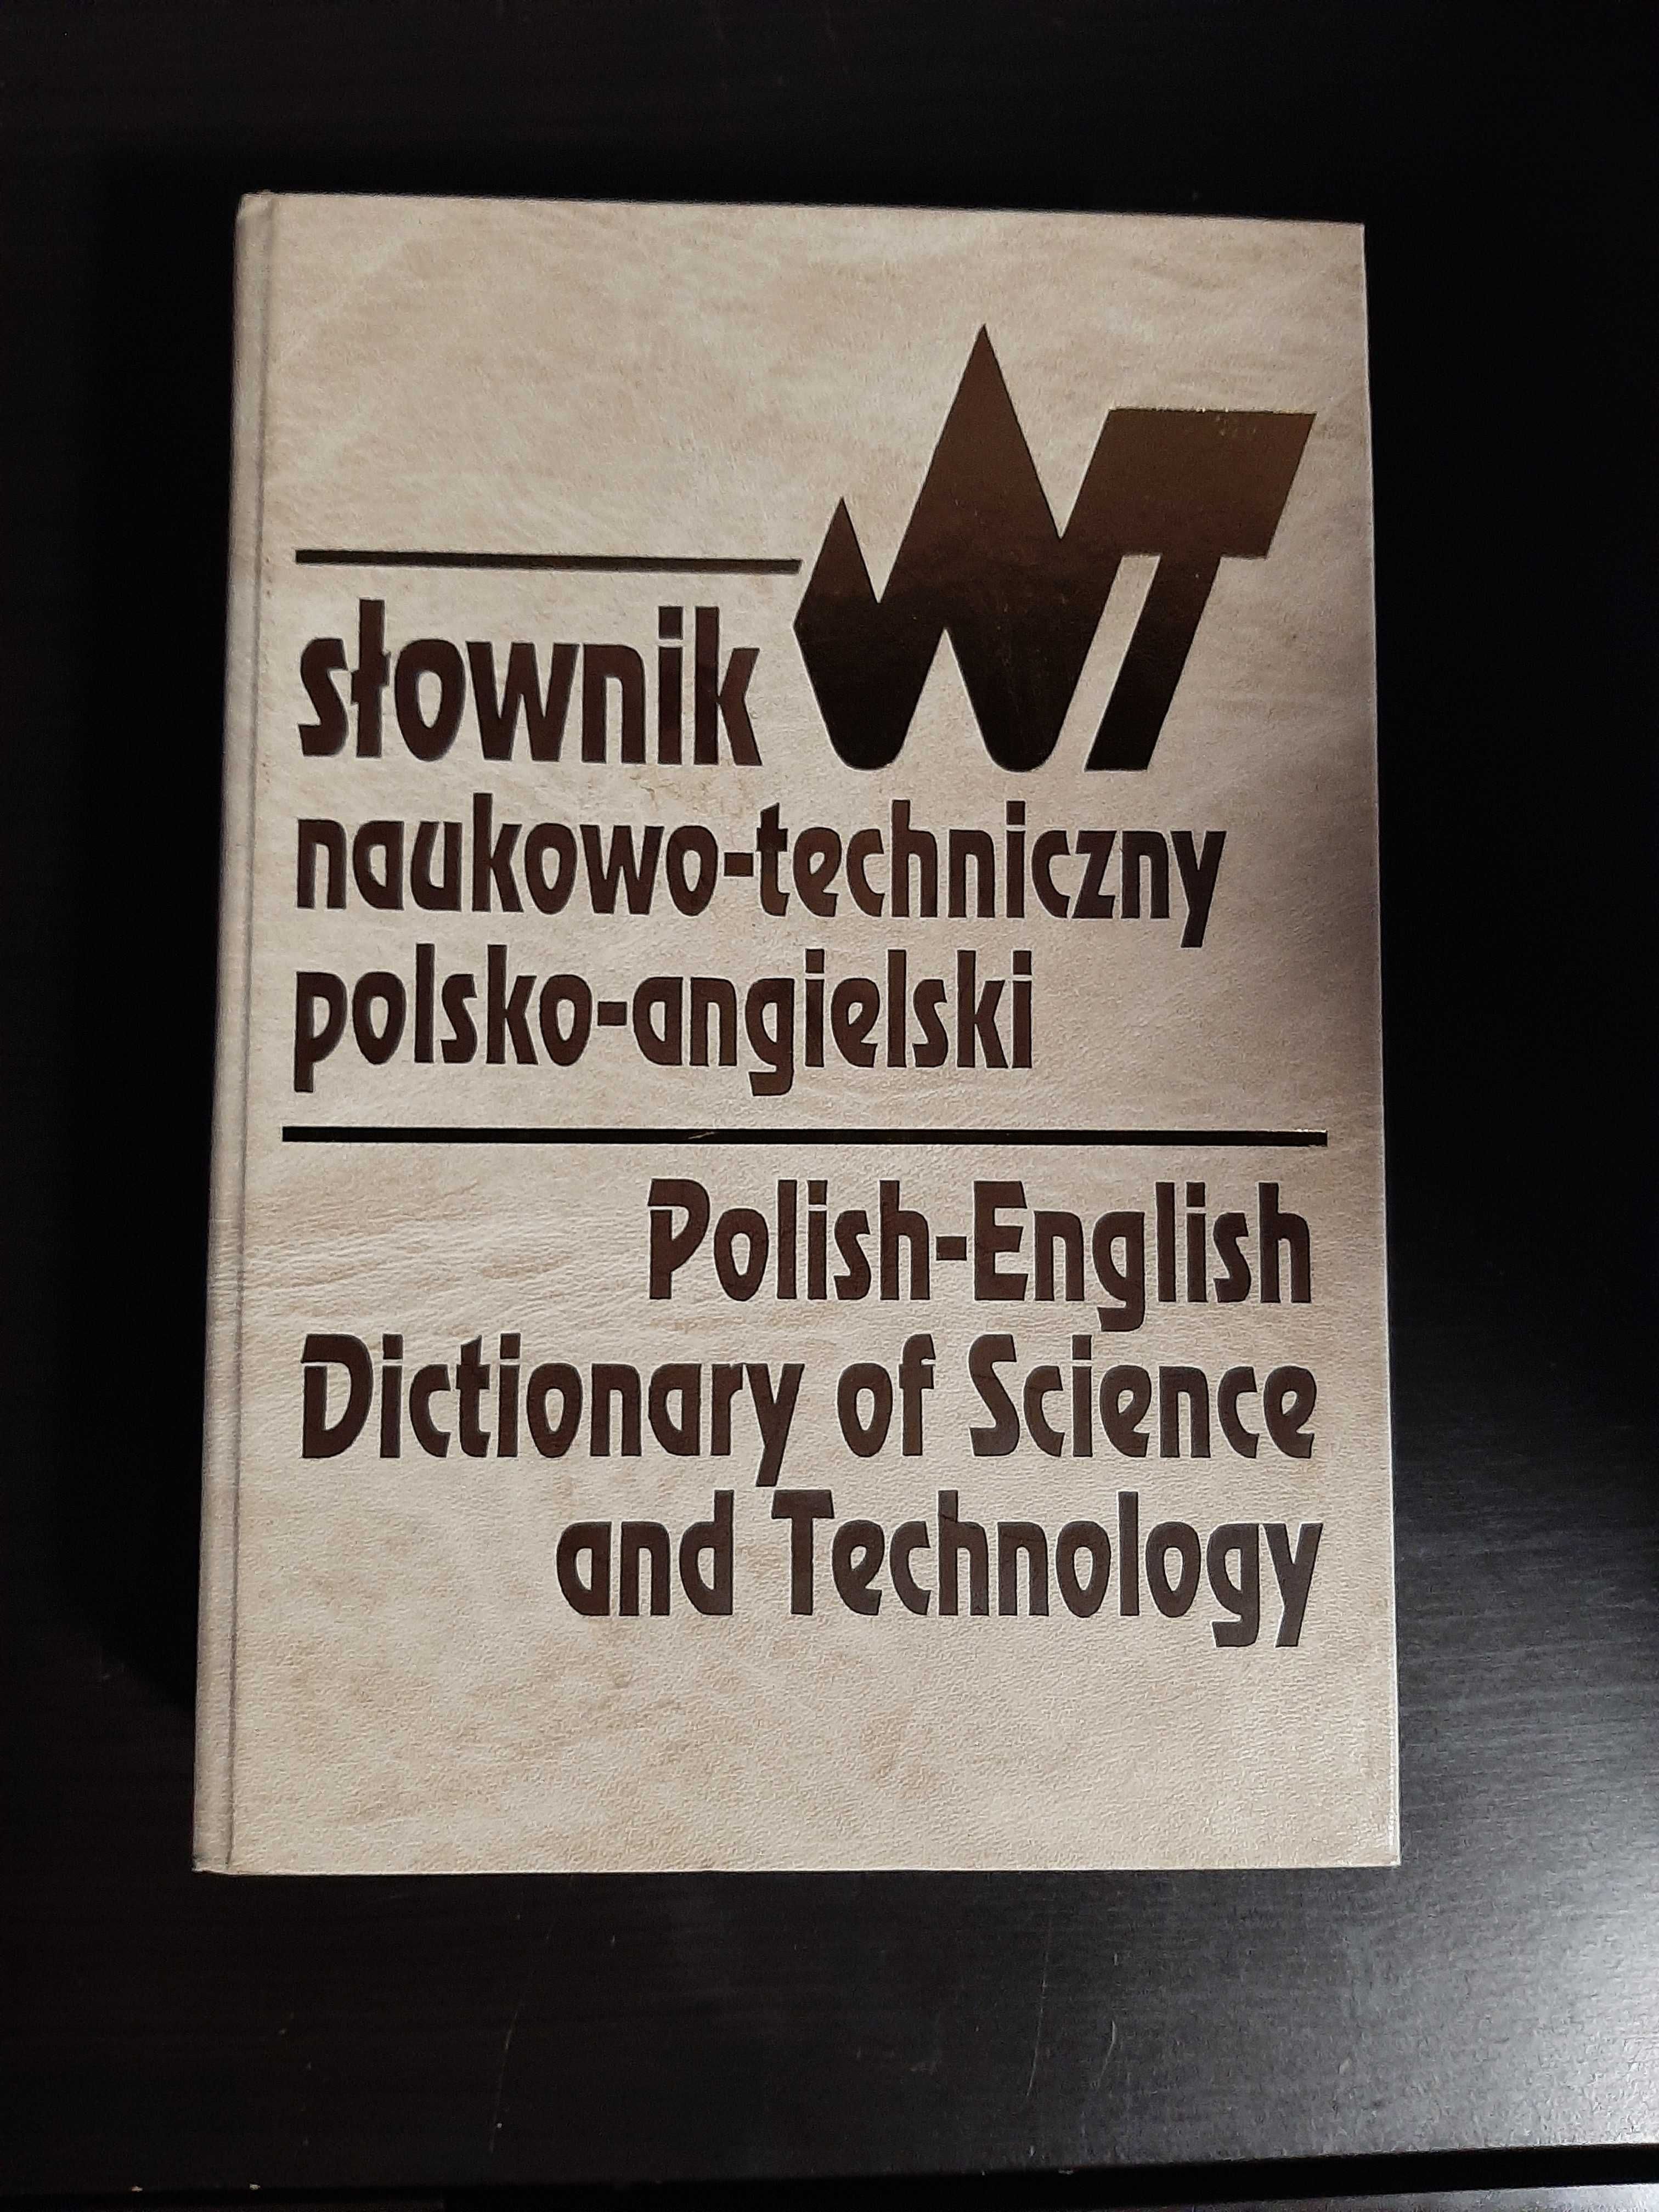 Słownik naukowo-techniczny polsko-angielski
Wydanie 8